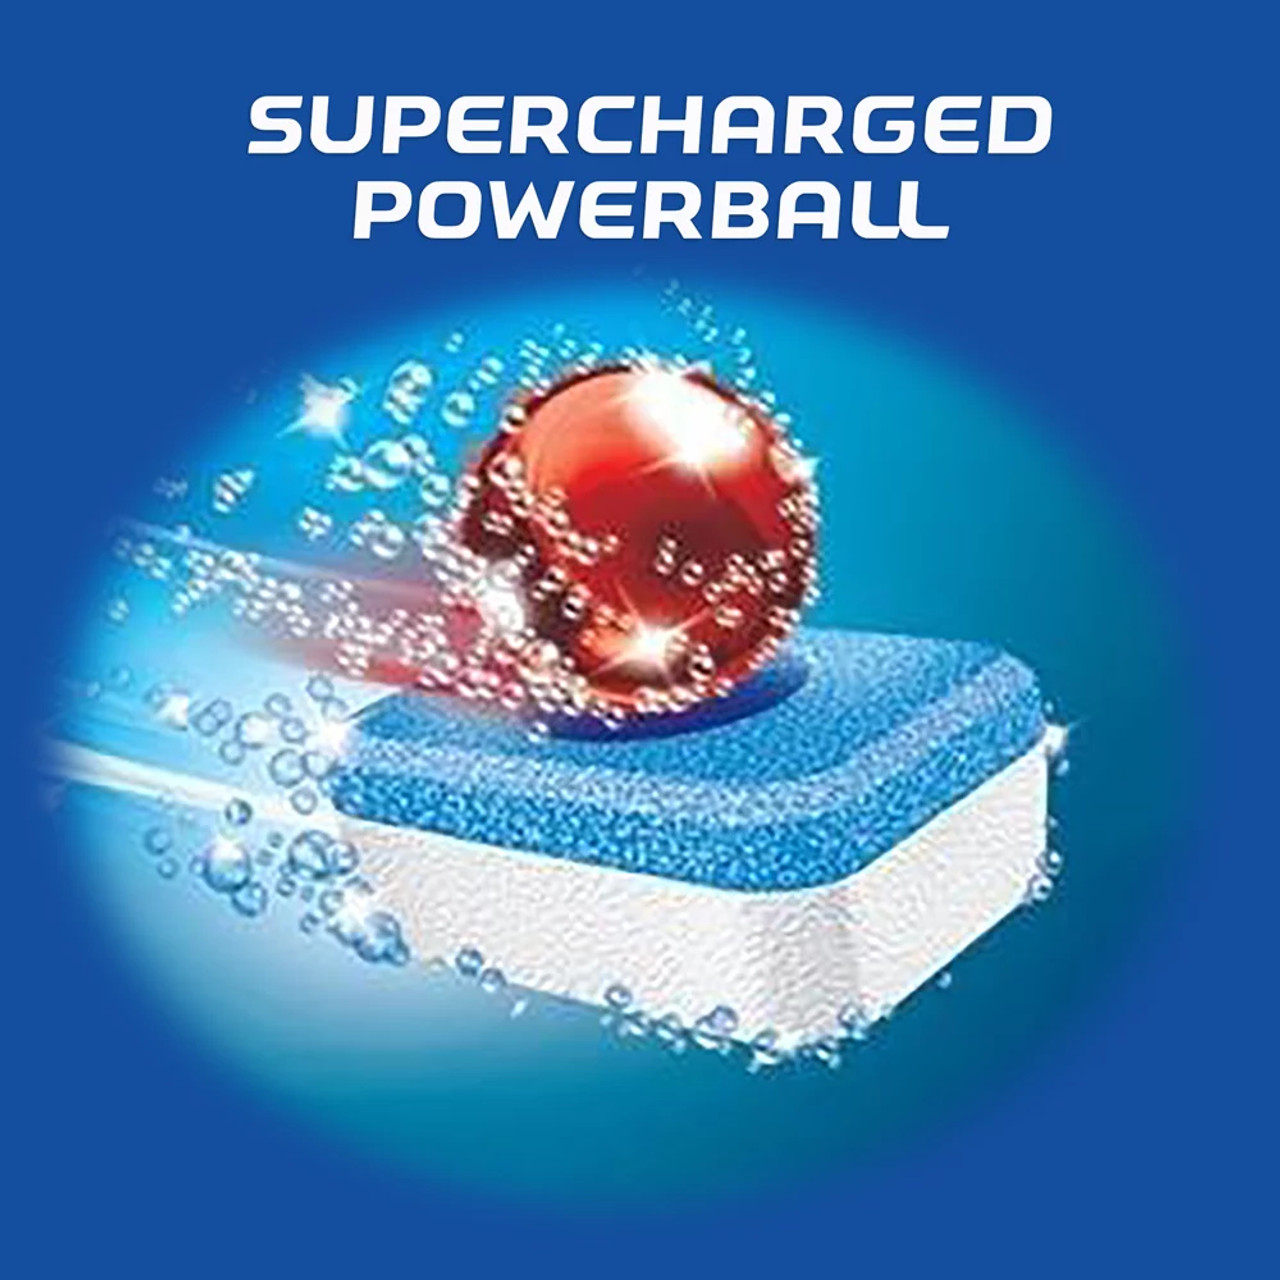 Reckitt Benckiser Finish® Powerball Dishwasher Tabs